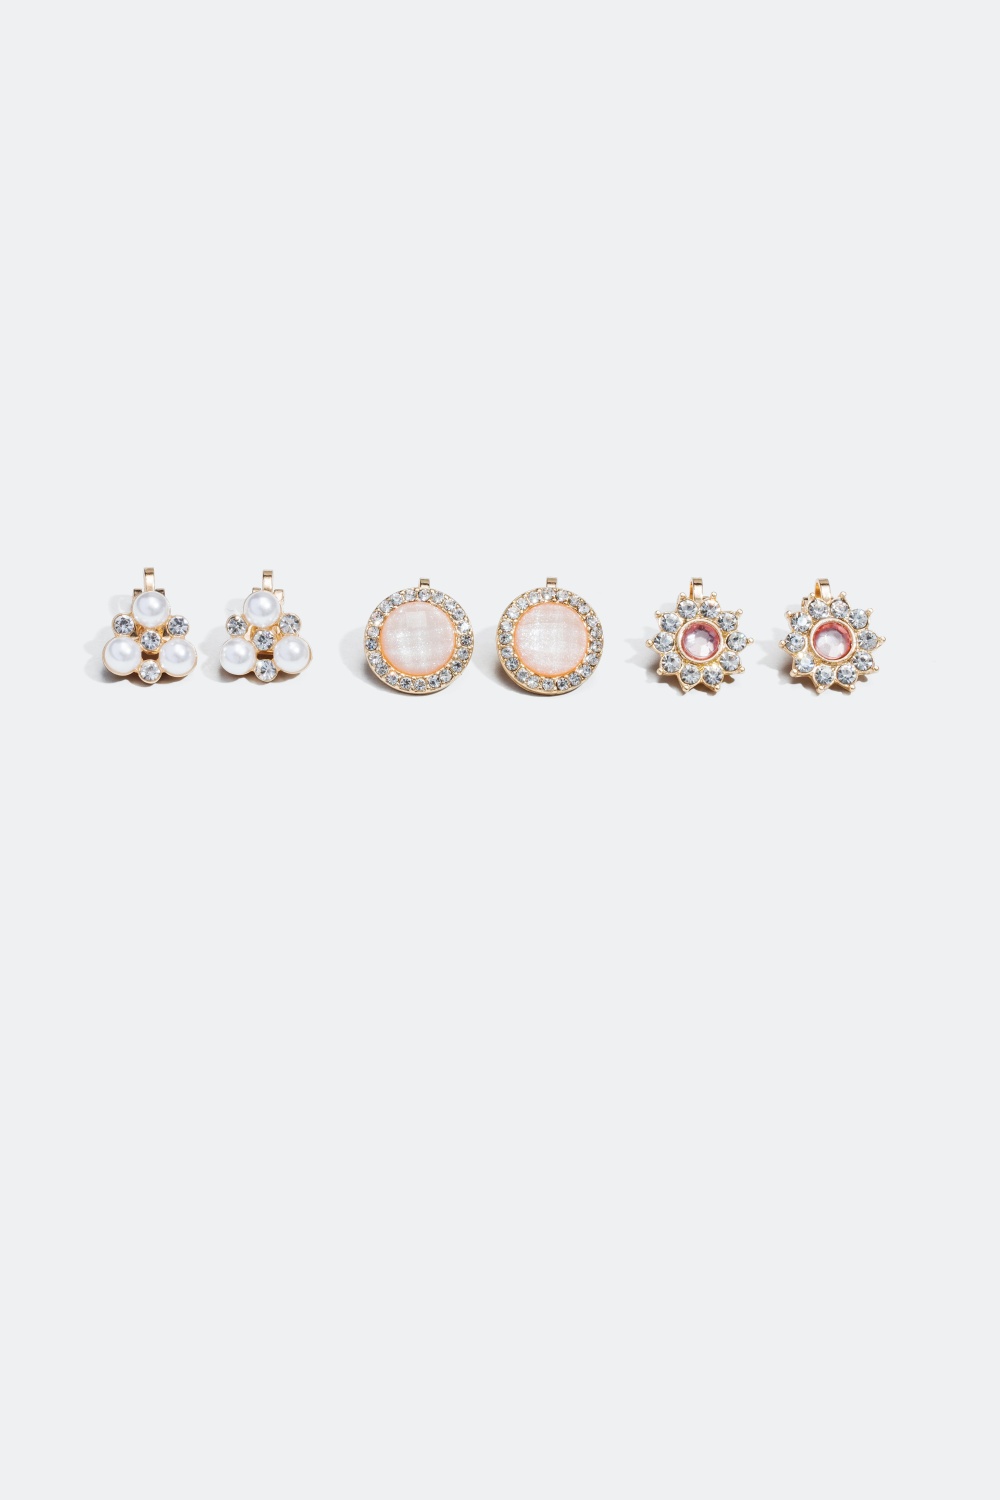 3-pak Clipsøreringe i lyserøde, hvide og guldfarvede nuancer i gruppen Alle Smykker hos Glitter (324484)